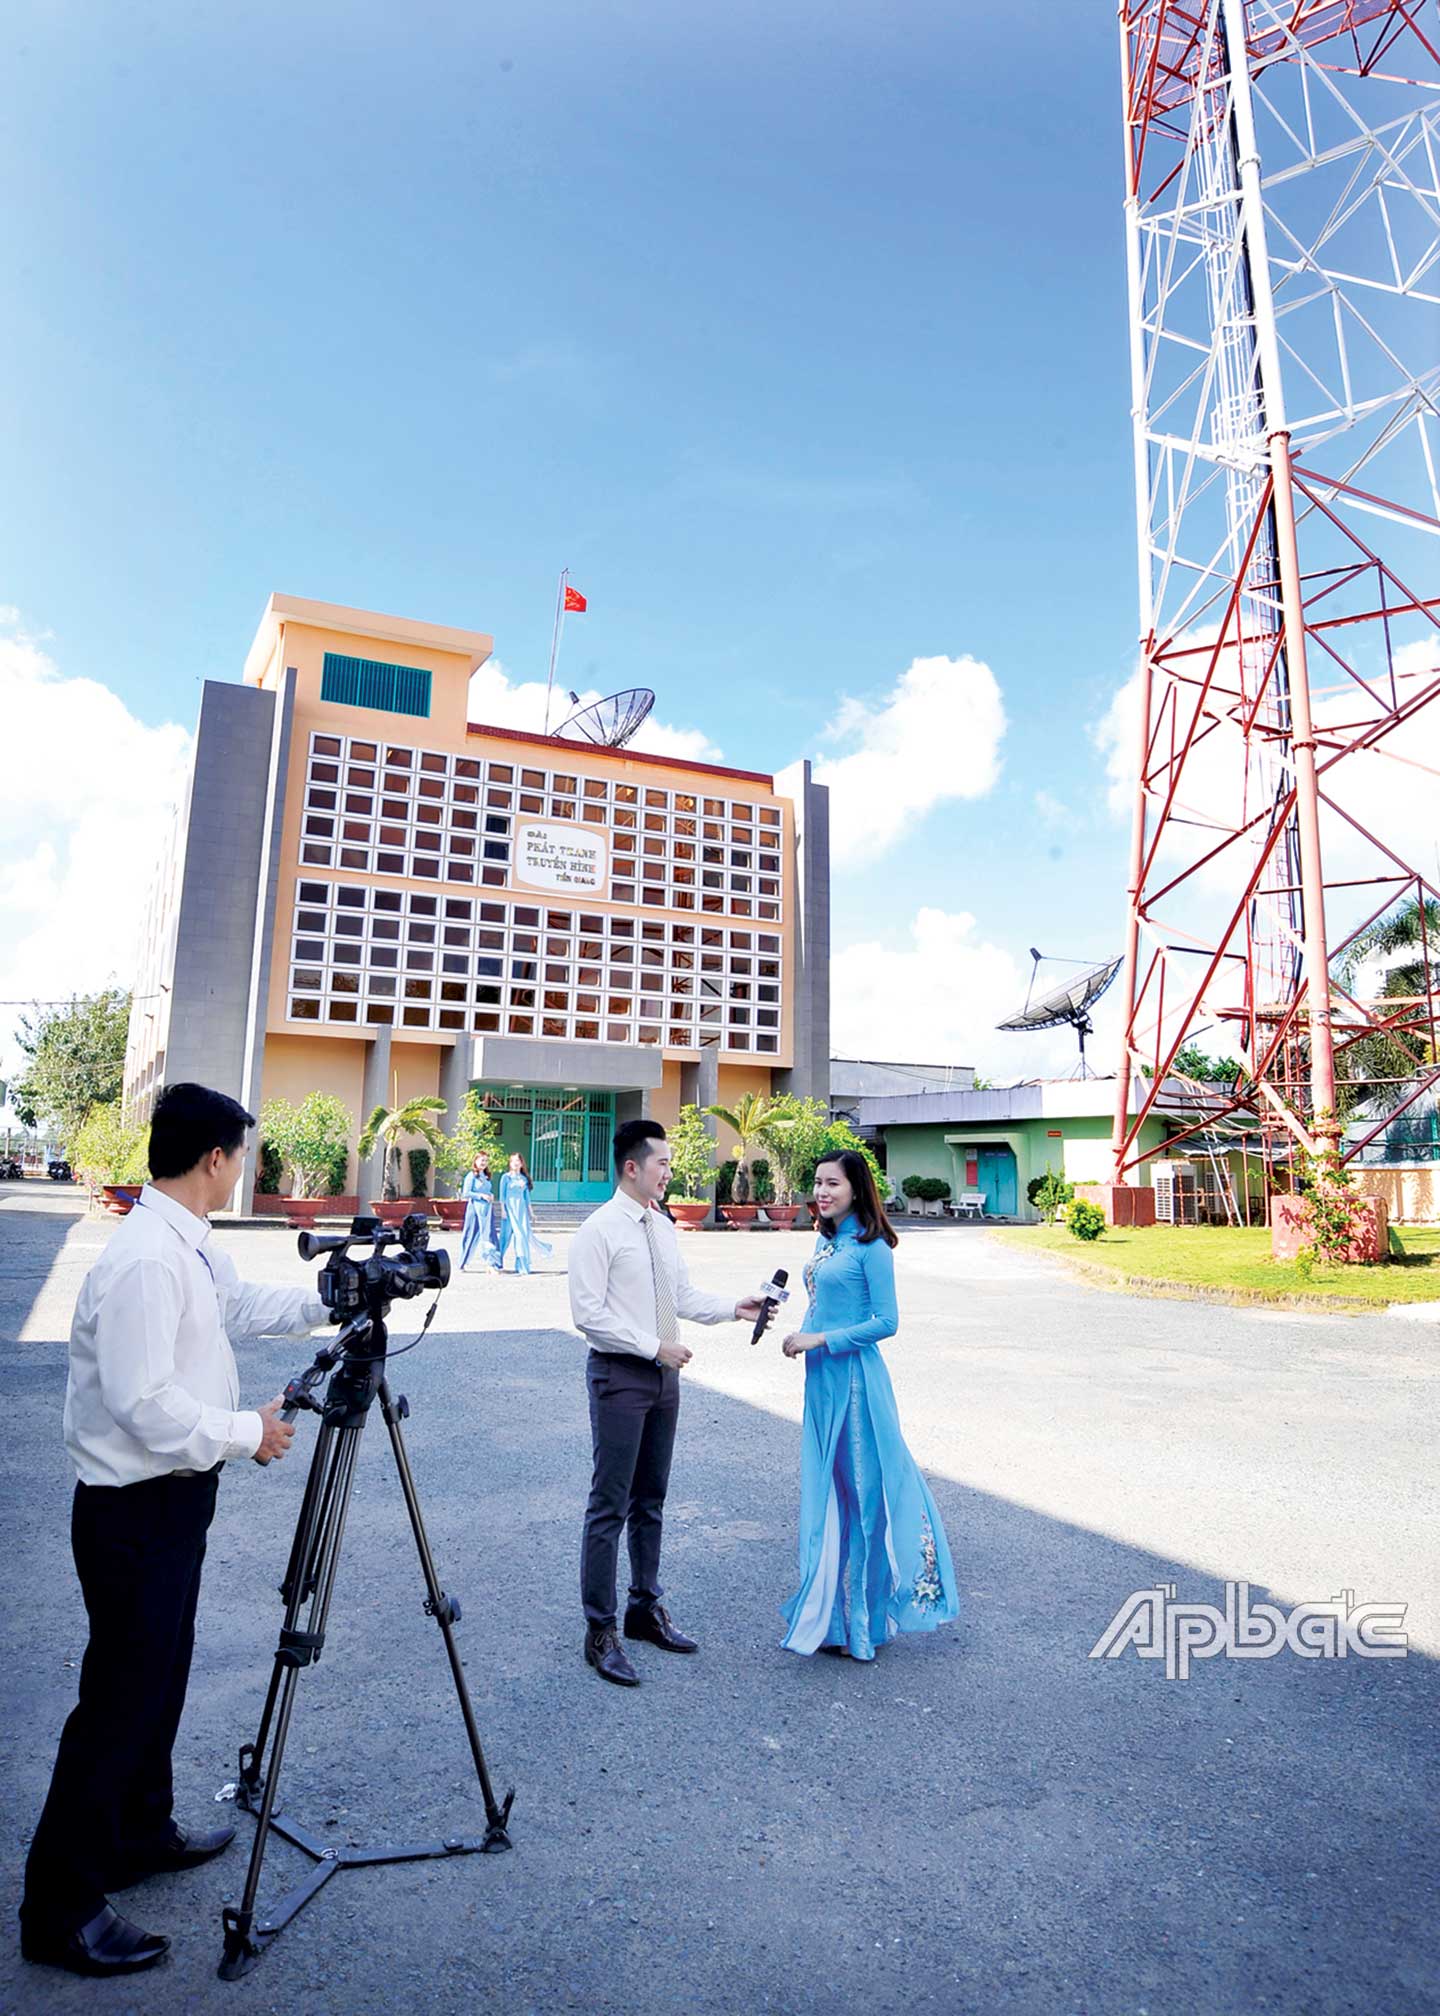 Đài PT-TH Tiền Giang đang phát sóng  chương trình truyền hình  với thời lượng 24/24 giờ mỗi ngày.